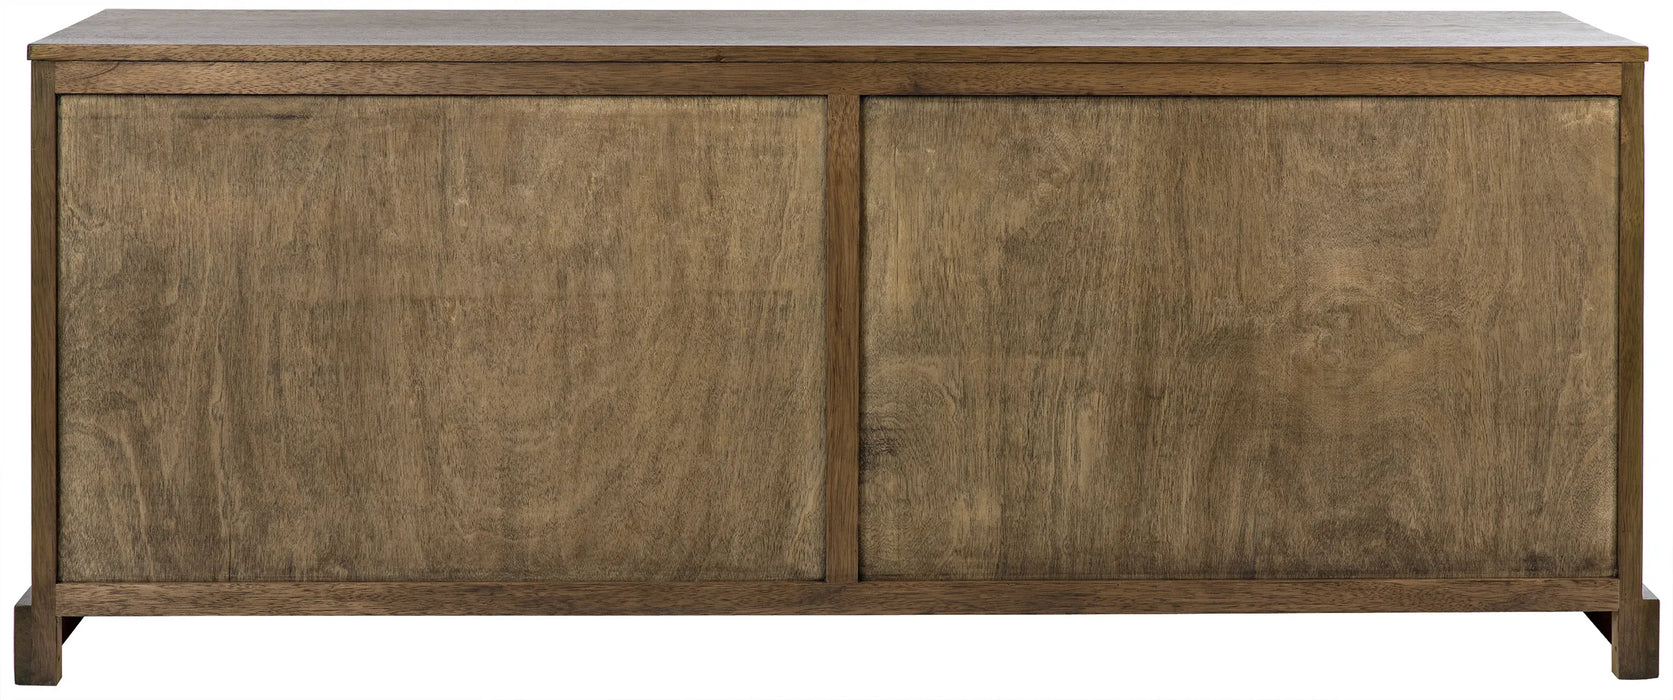 Noir Furniture - Genti 4 Door Sideboard, Dark Walnut - GCON303DW-4